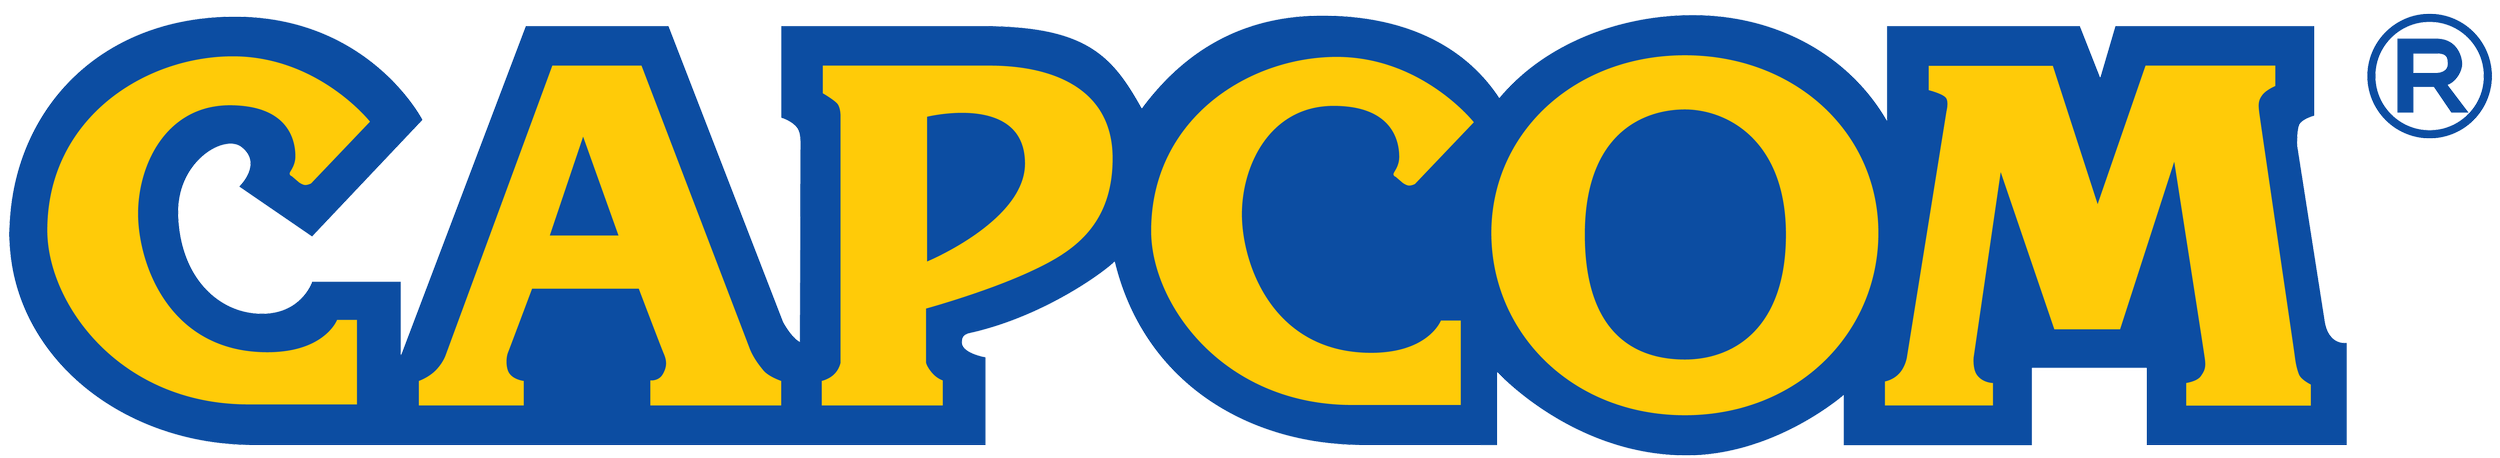 Capcom Logo.png